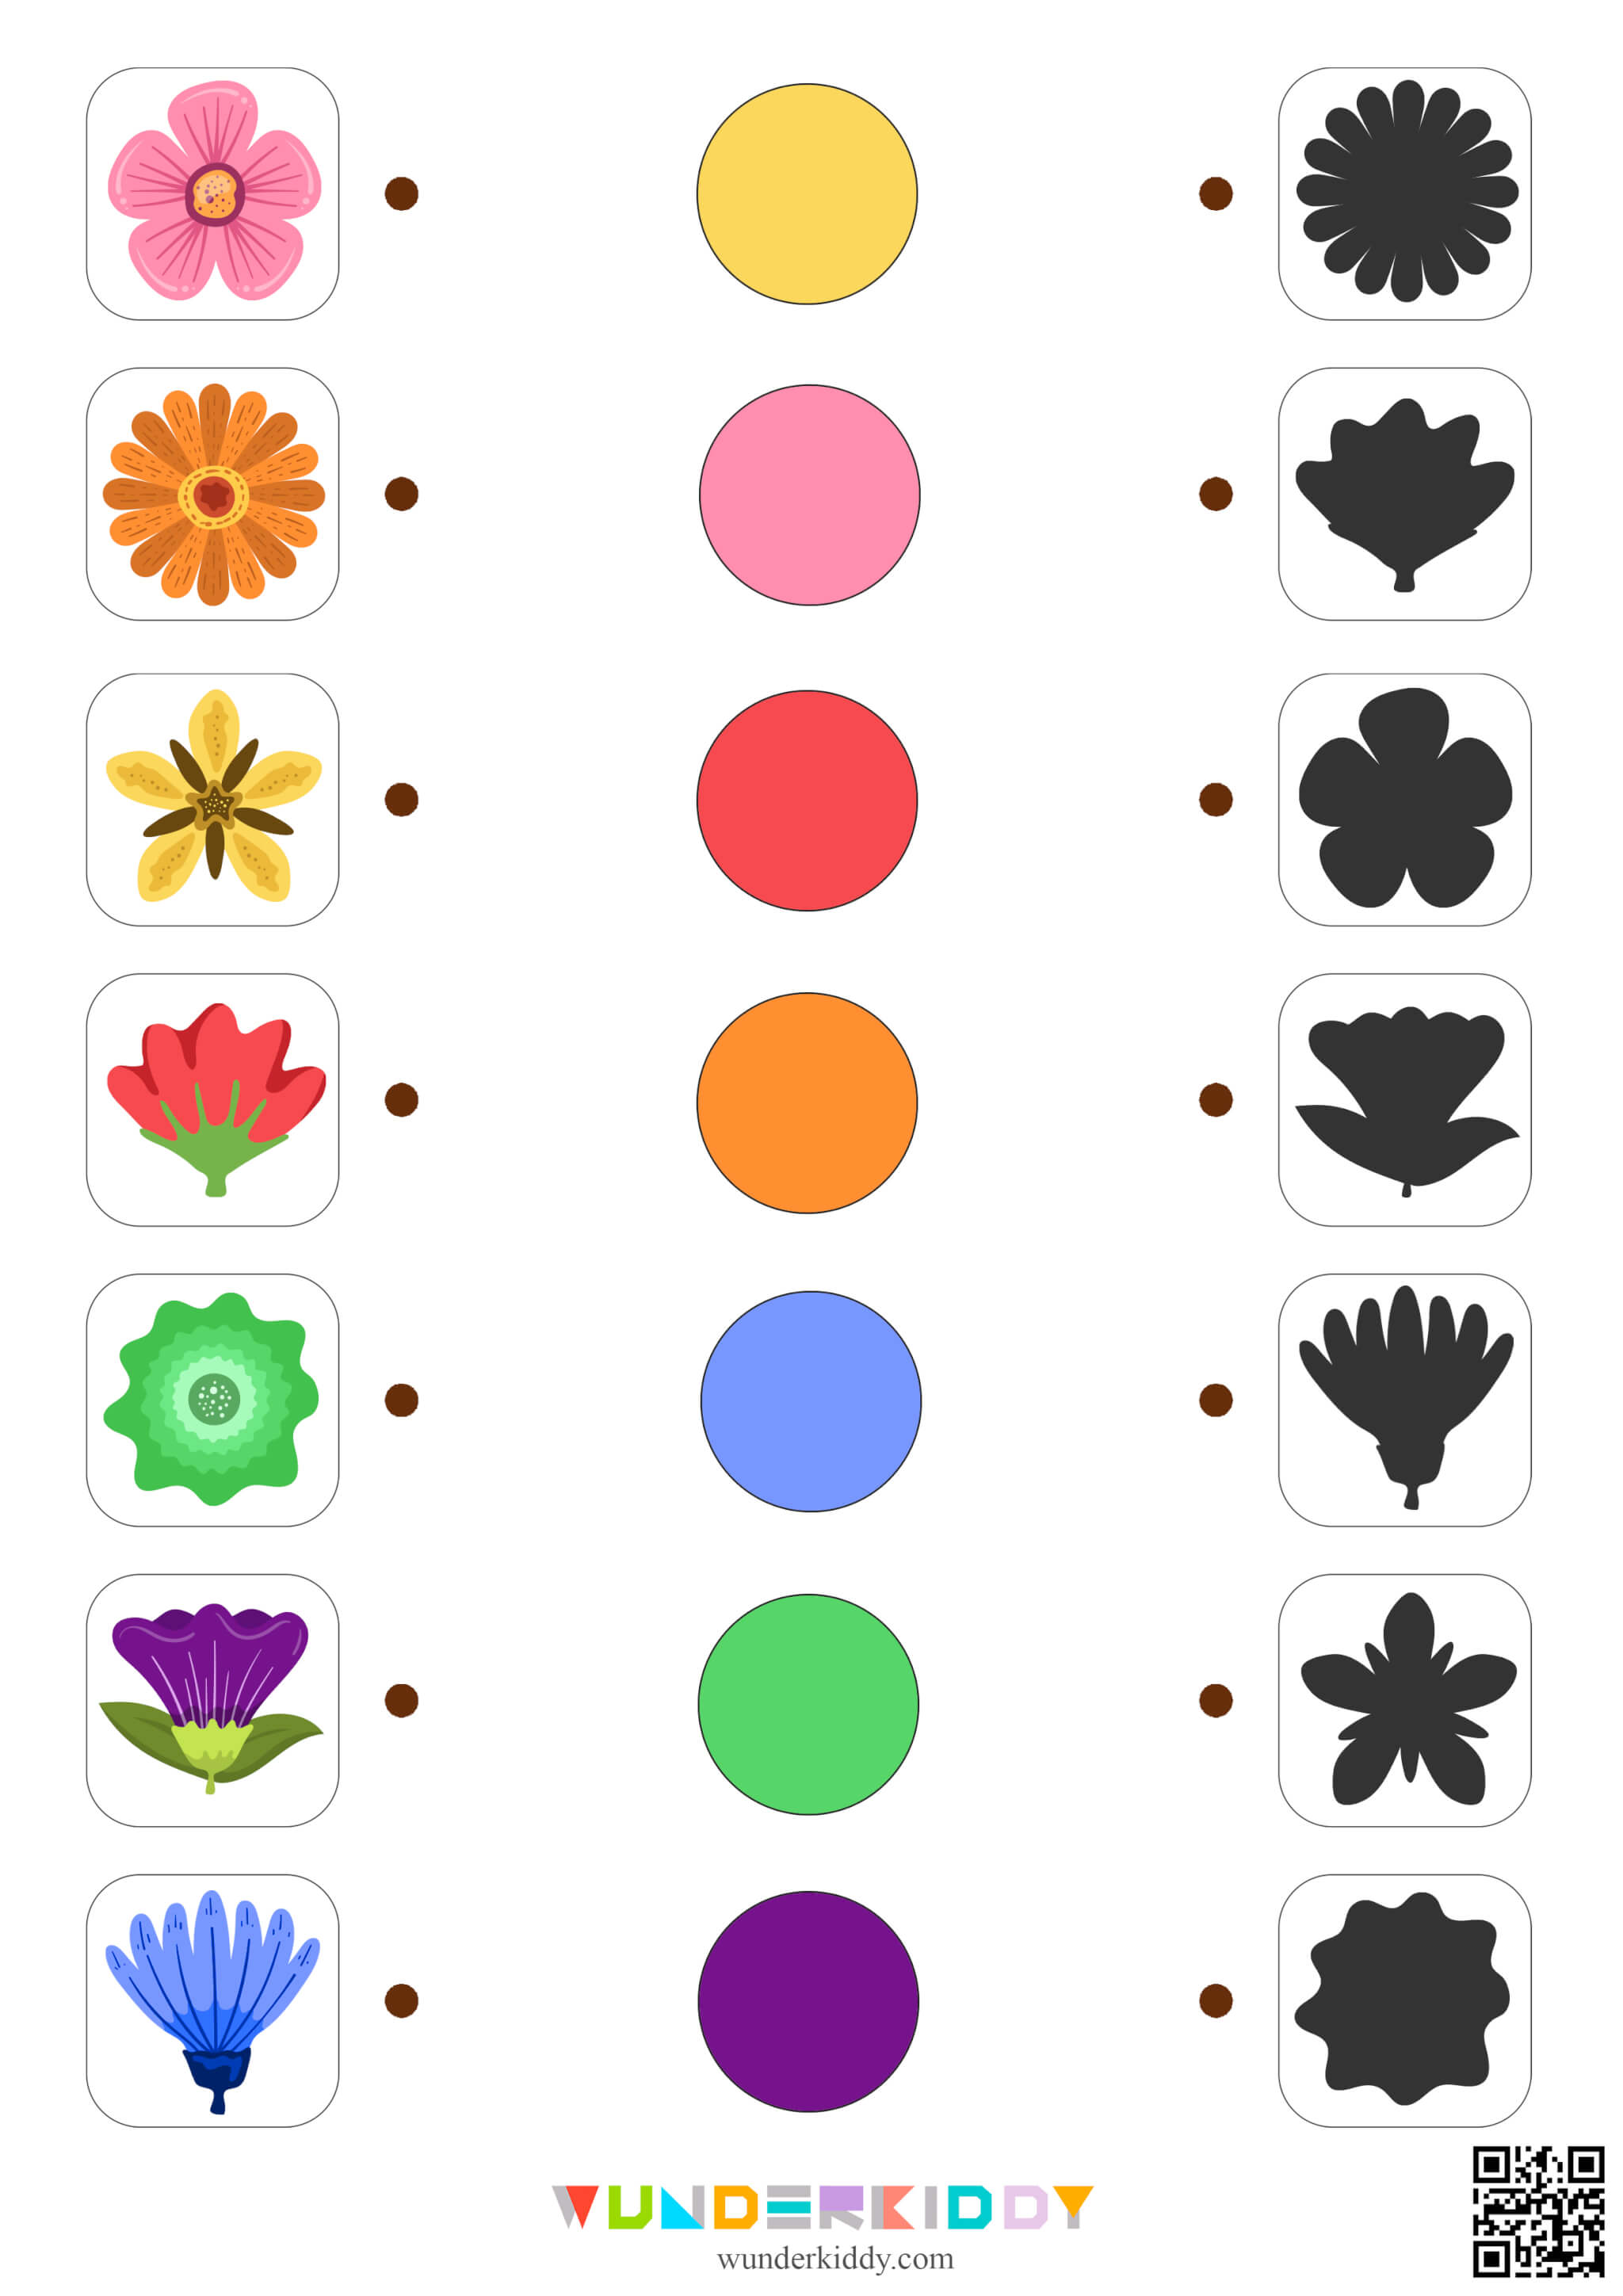 Flowers Matching Worksheet - Image 2